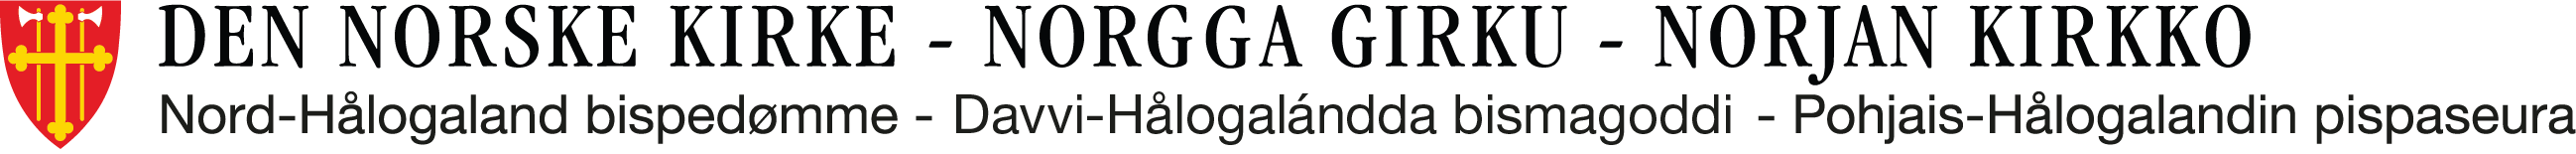 Nord-Hålogaland bispedømme logo